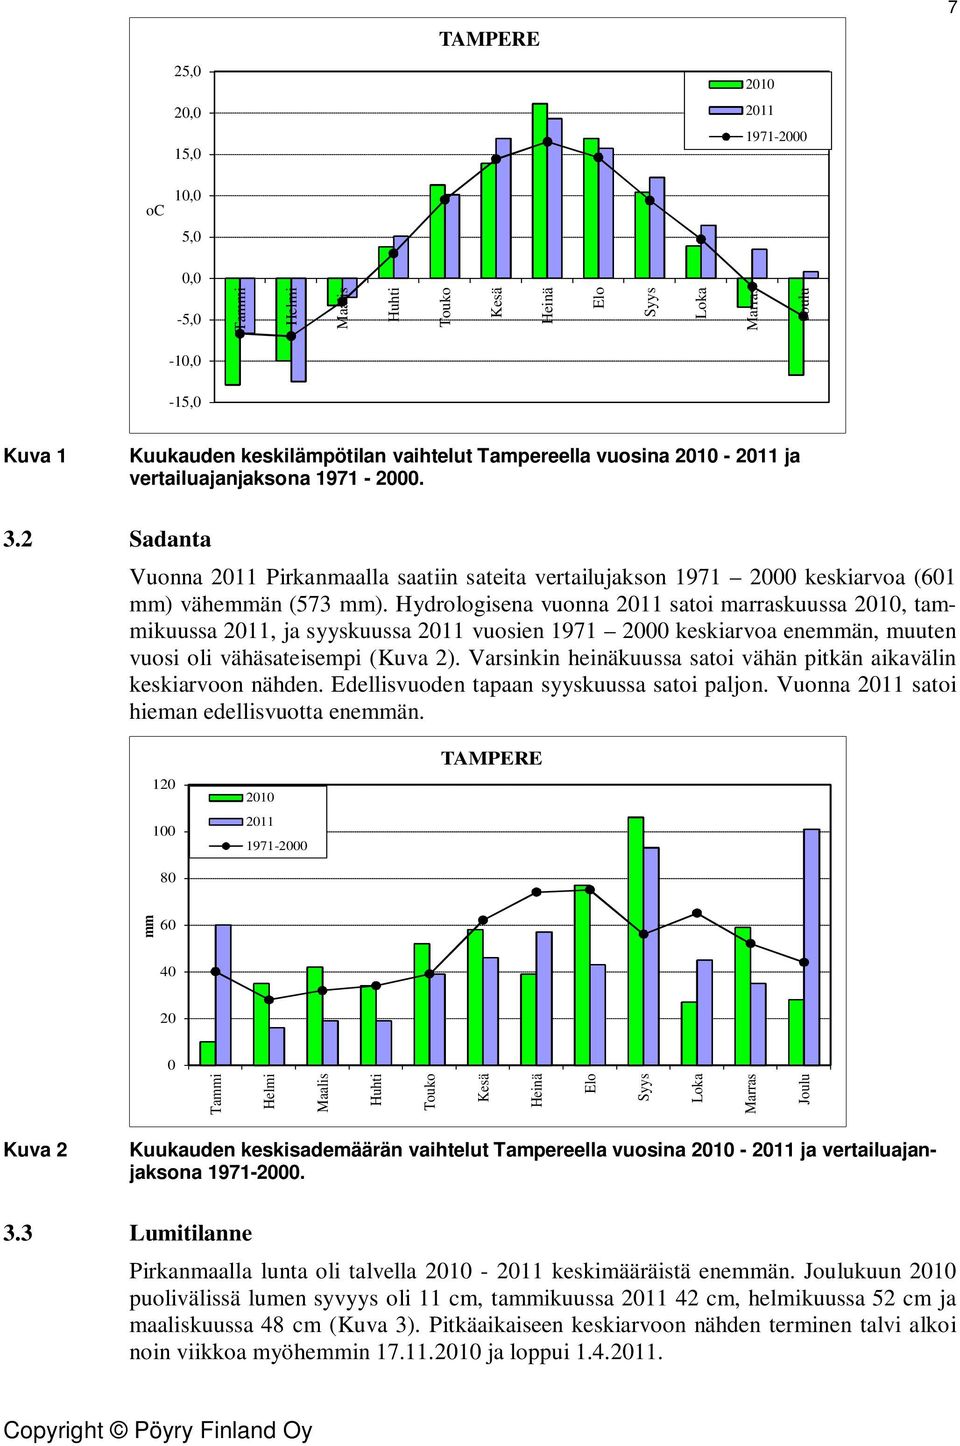 Hydrologisena vuonna 2011 satoi marraskuussa 2010, tammikuussa 2011, ja syyskuussa 2011 vuosien 1971 2000 keskiarvoa enemmän, muuten vuosi oli vähäsateisempi (Kuva 2).